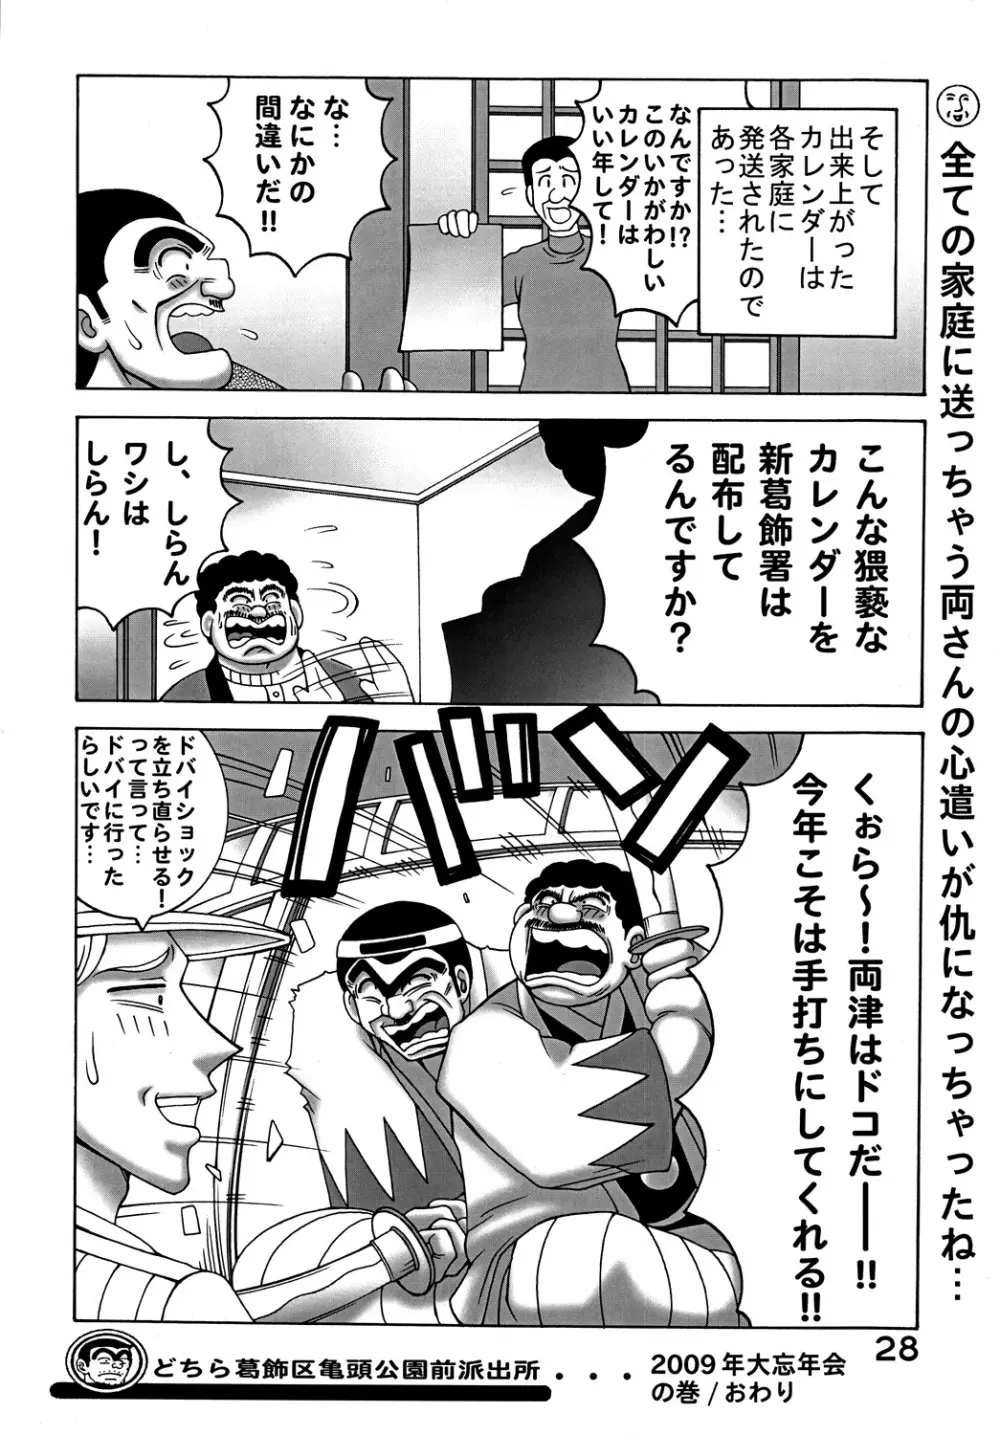 こち亀ダイナマイト Vol.9 - page27